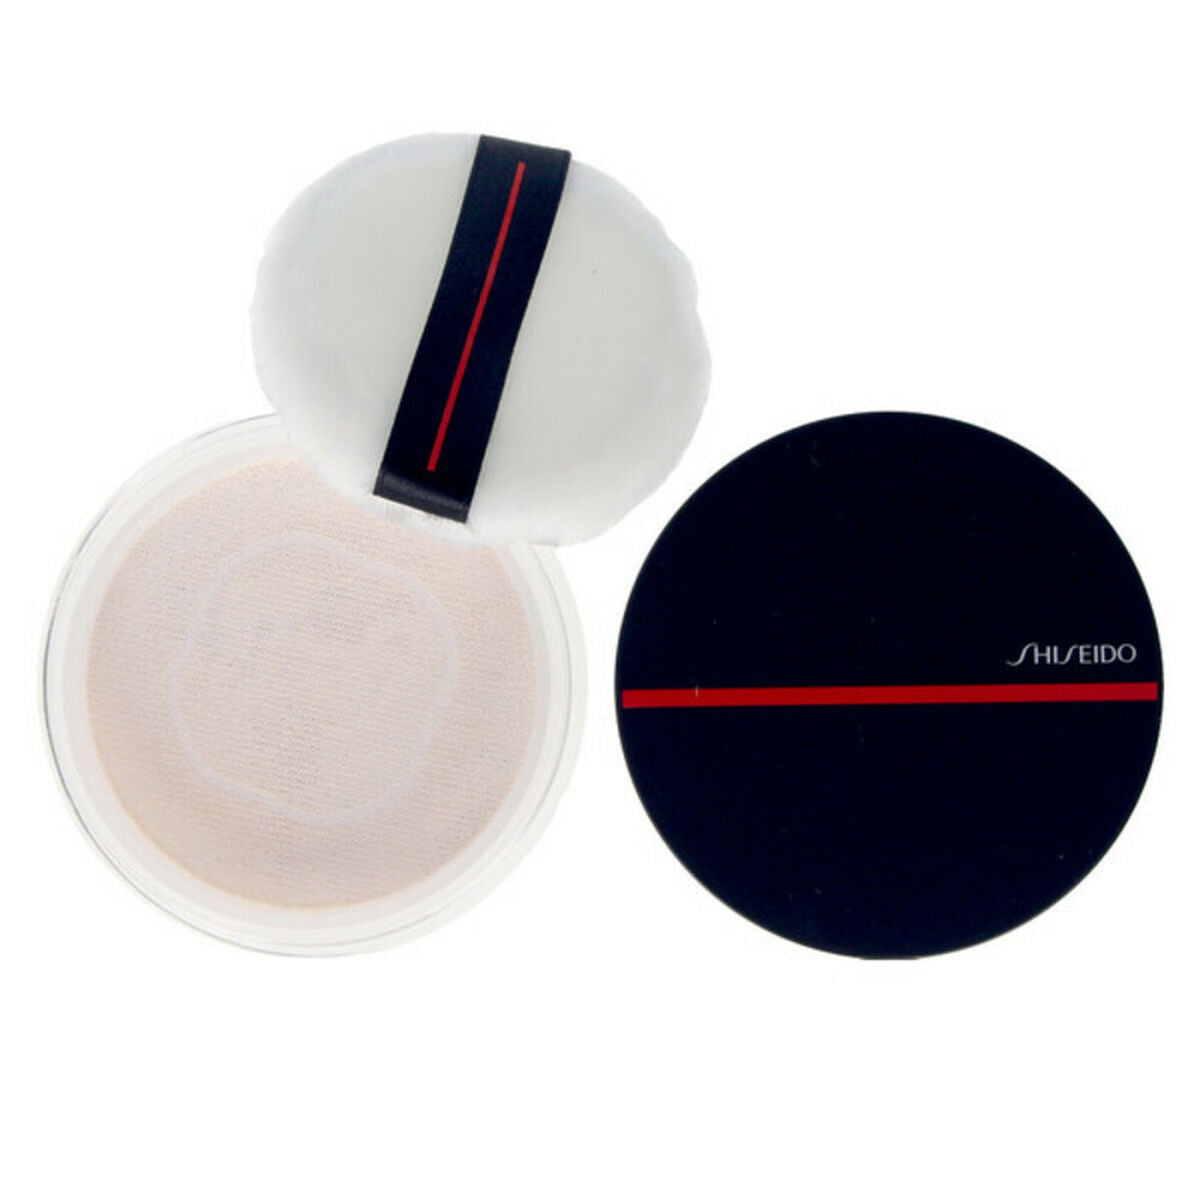 Compact Powders Synchro Skin Shiseido (6 g)-0